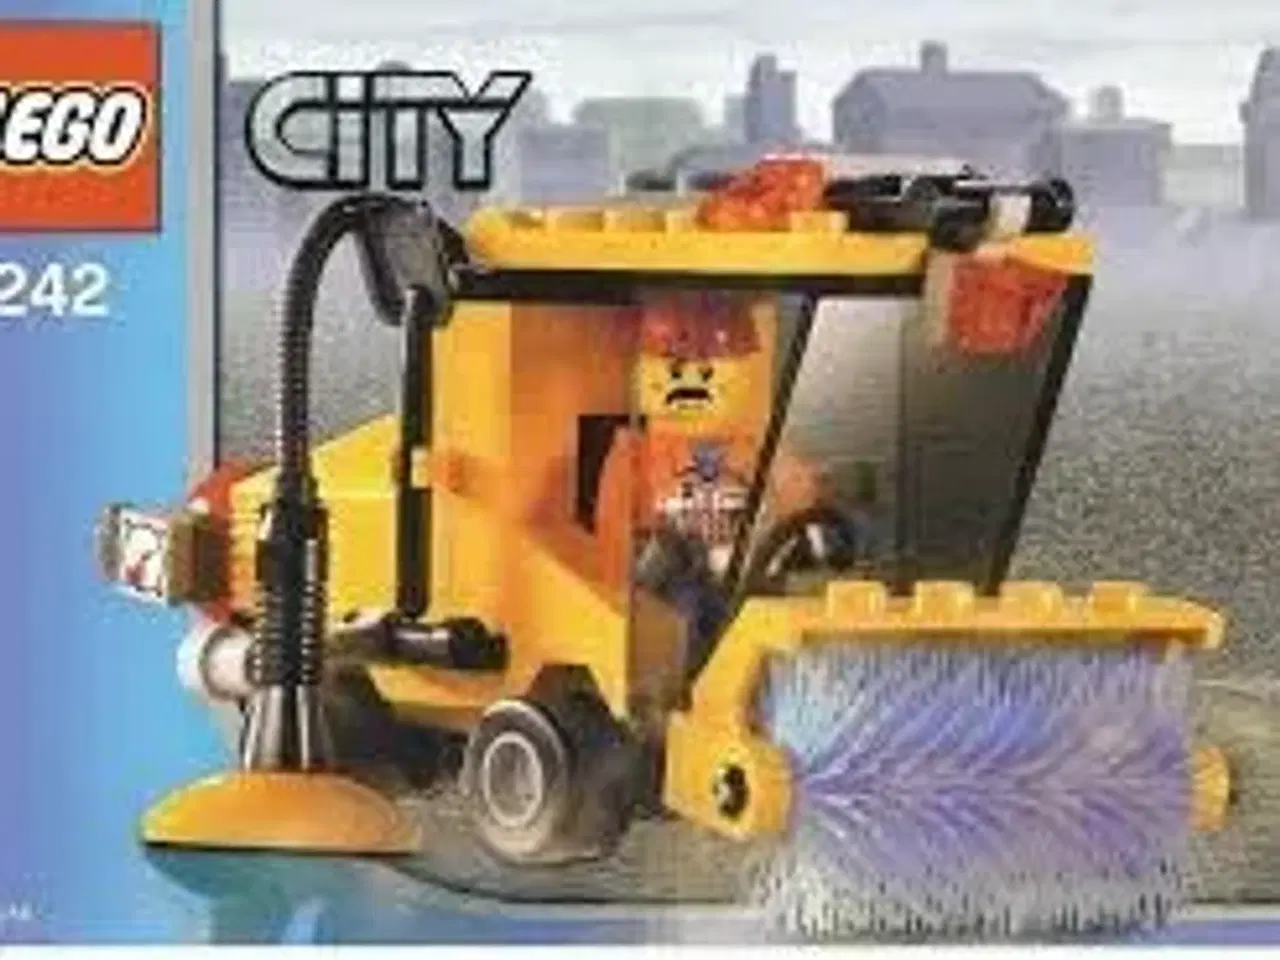 Billede 1 - Lego City 7242